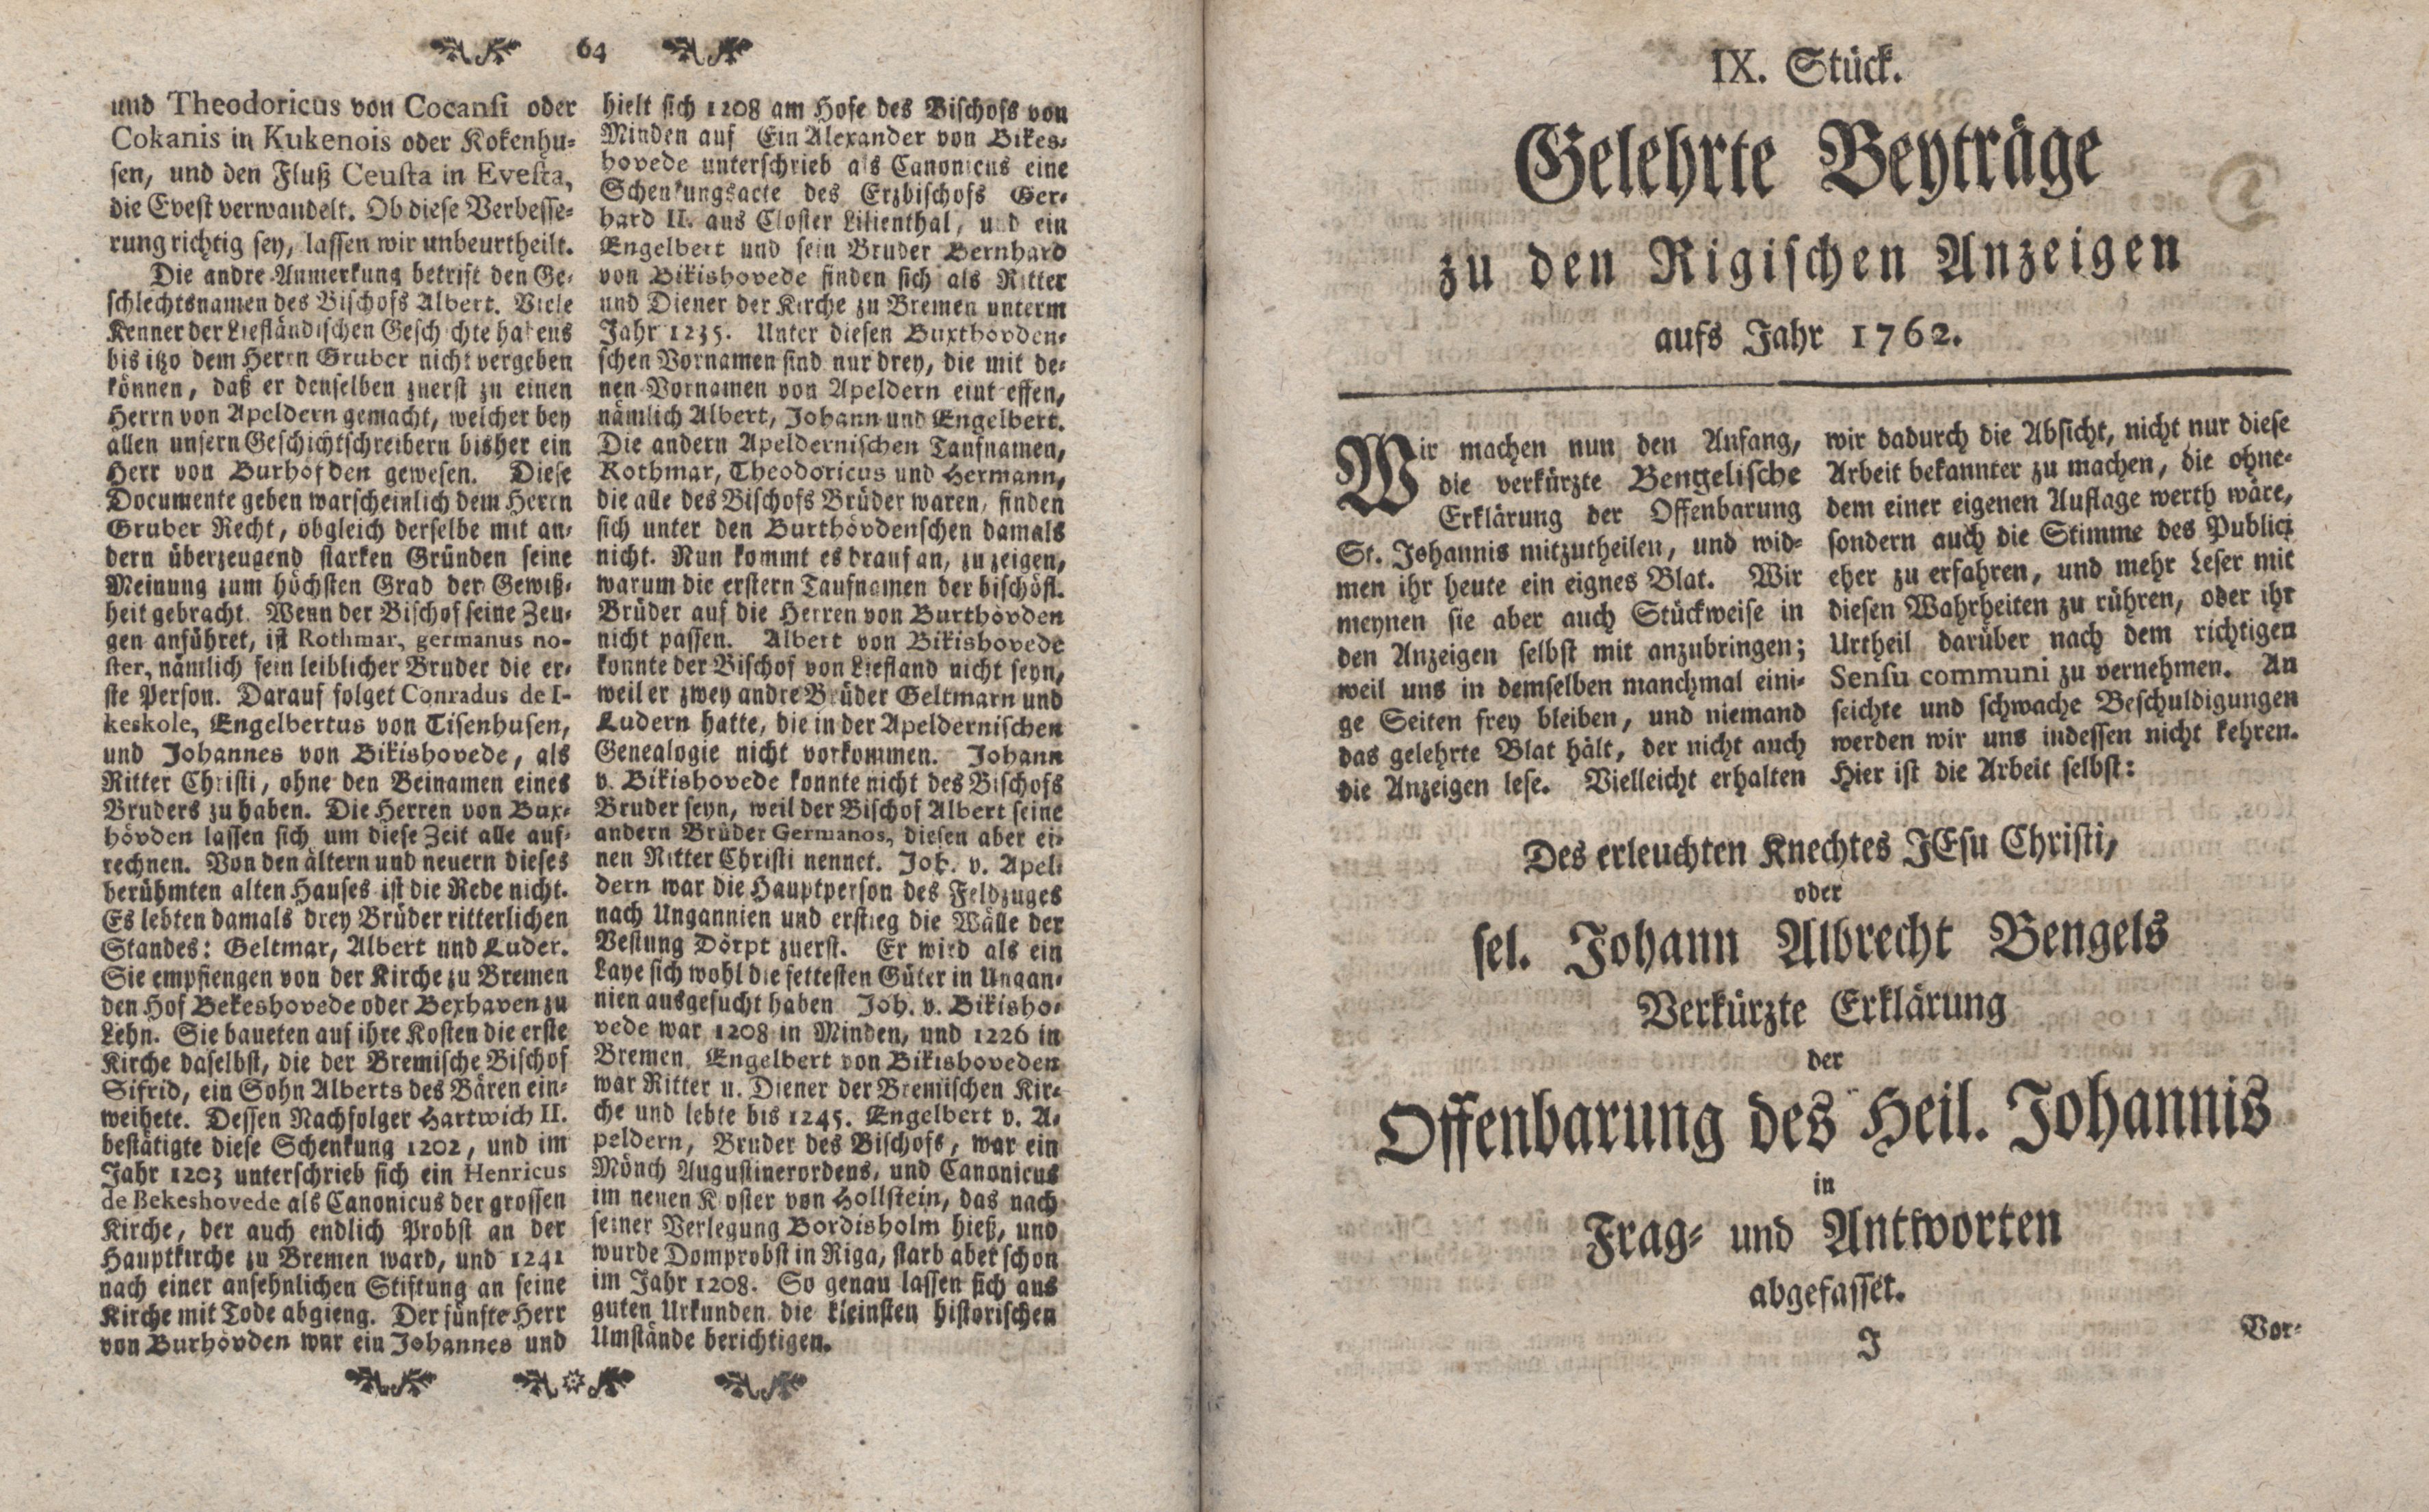 Gelehrte Beyträge zu den Rigischen Anzeigen 1762 (1762) | 33. (64-65) Haupttext